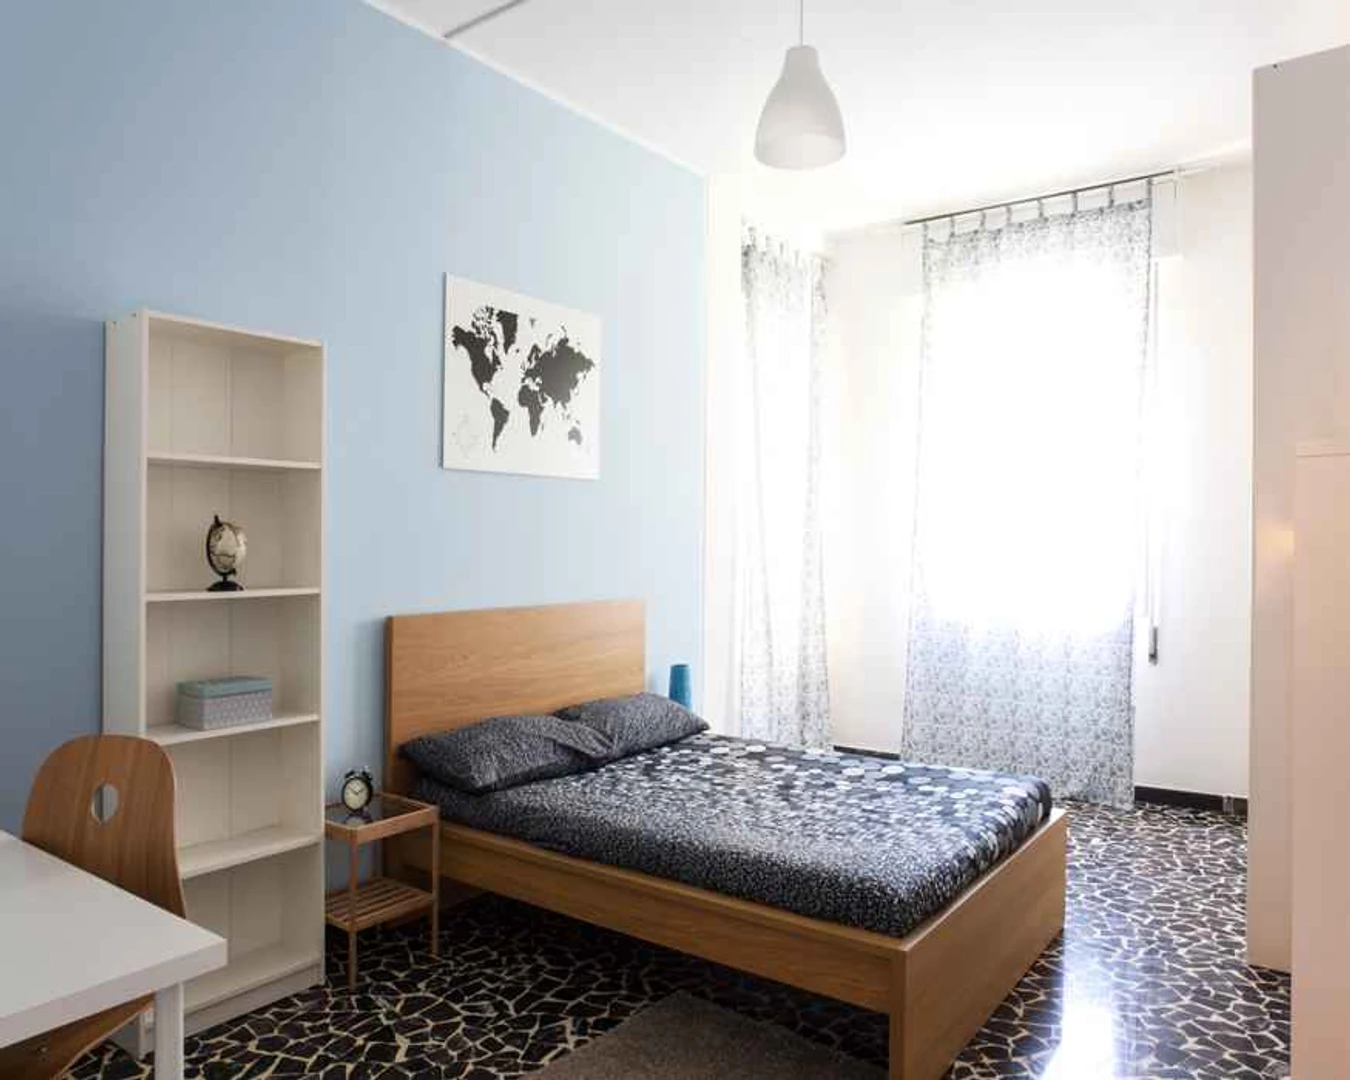 Cheap private room in Bologna